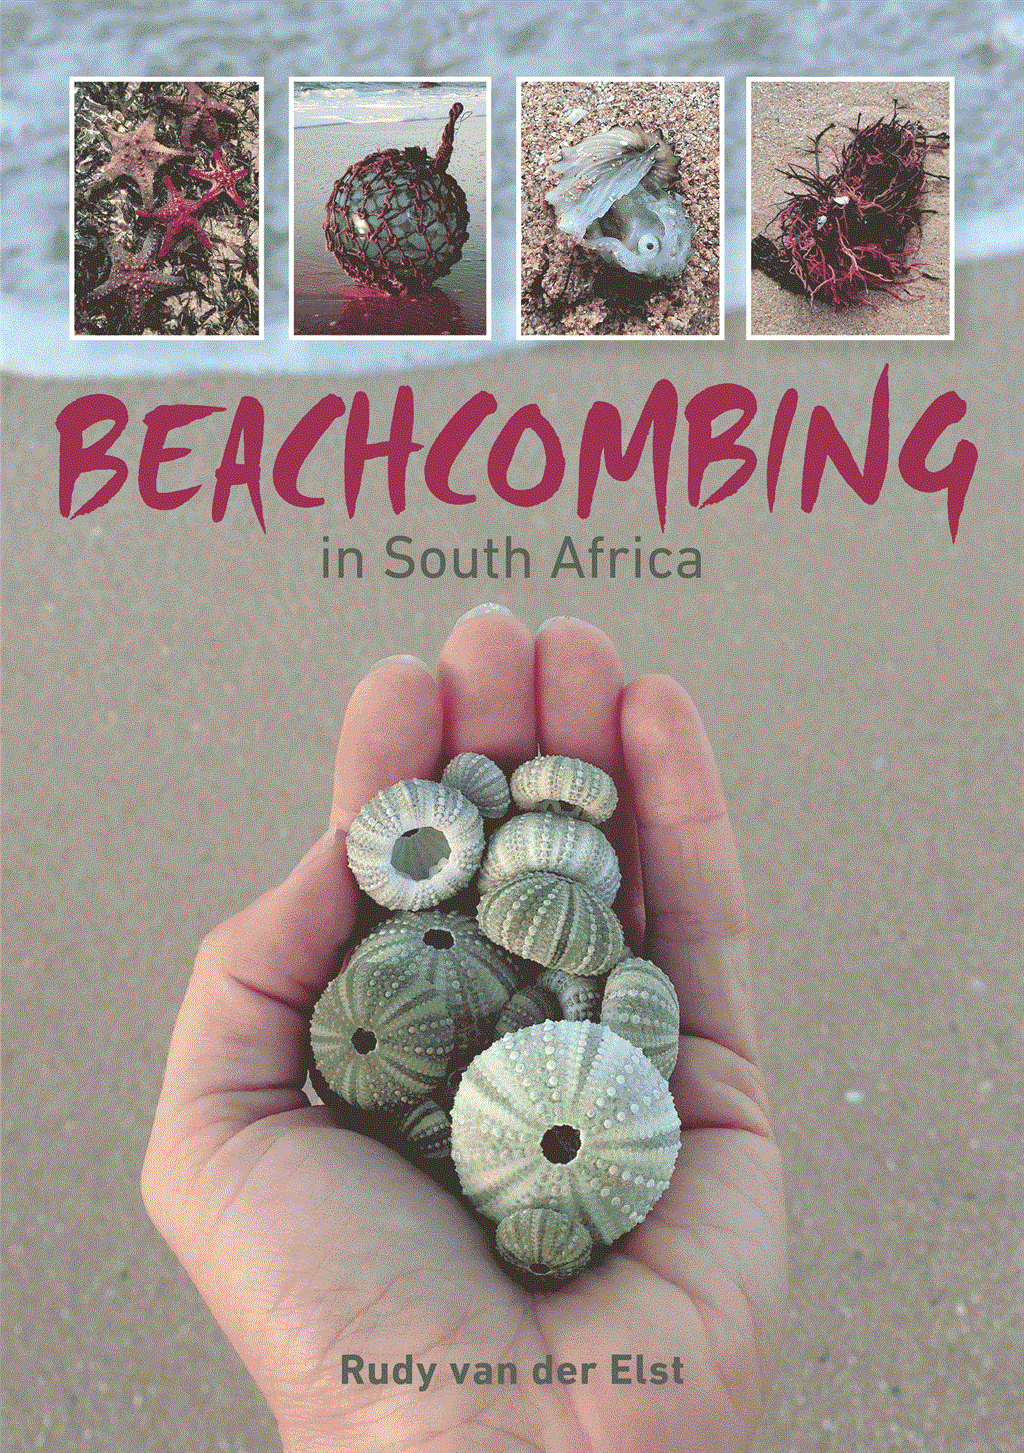 Beachcombing in South Africa by Rudy van der Elst